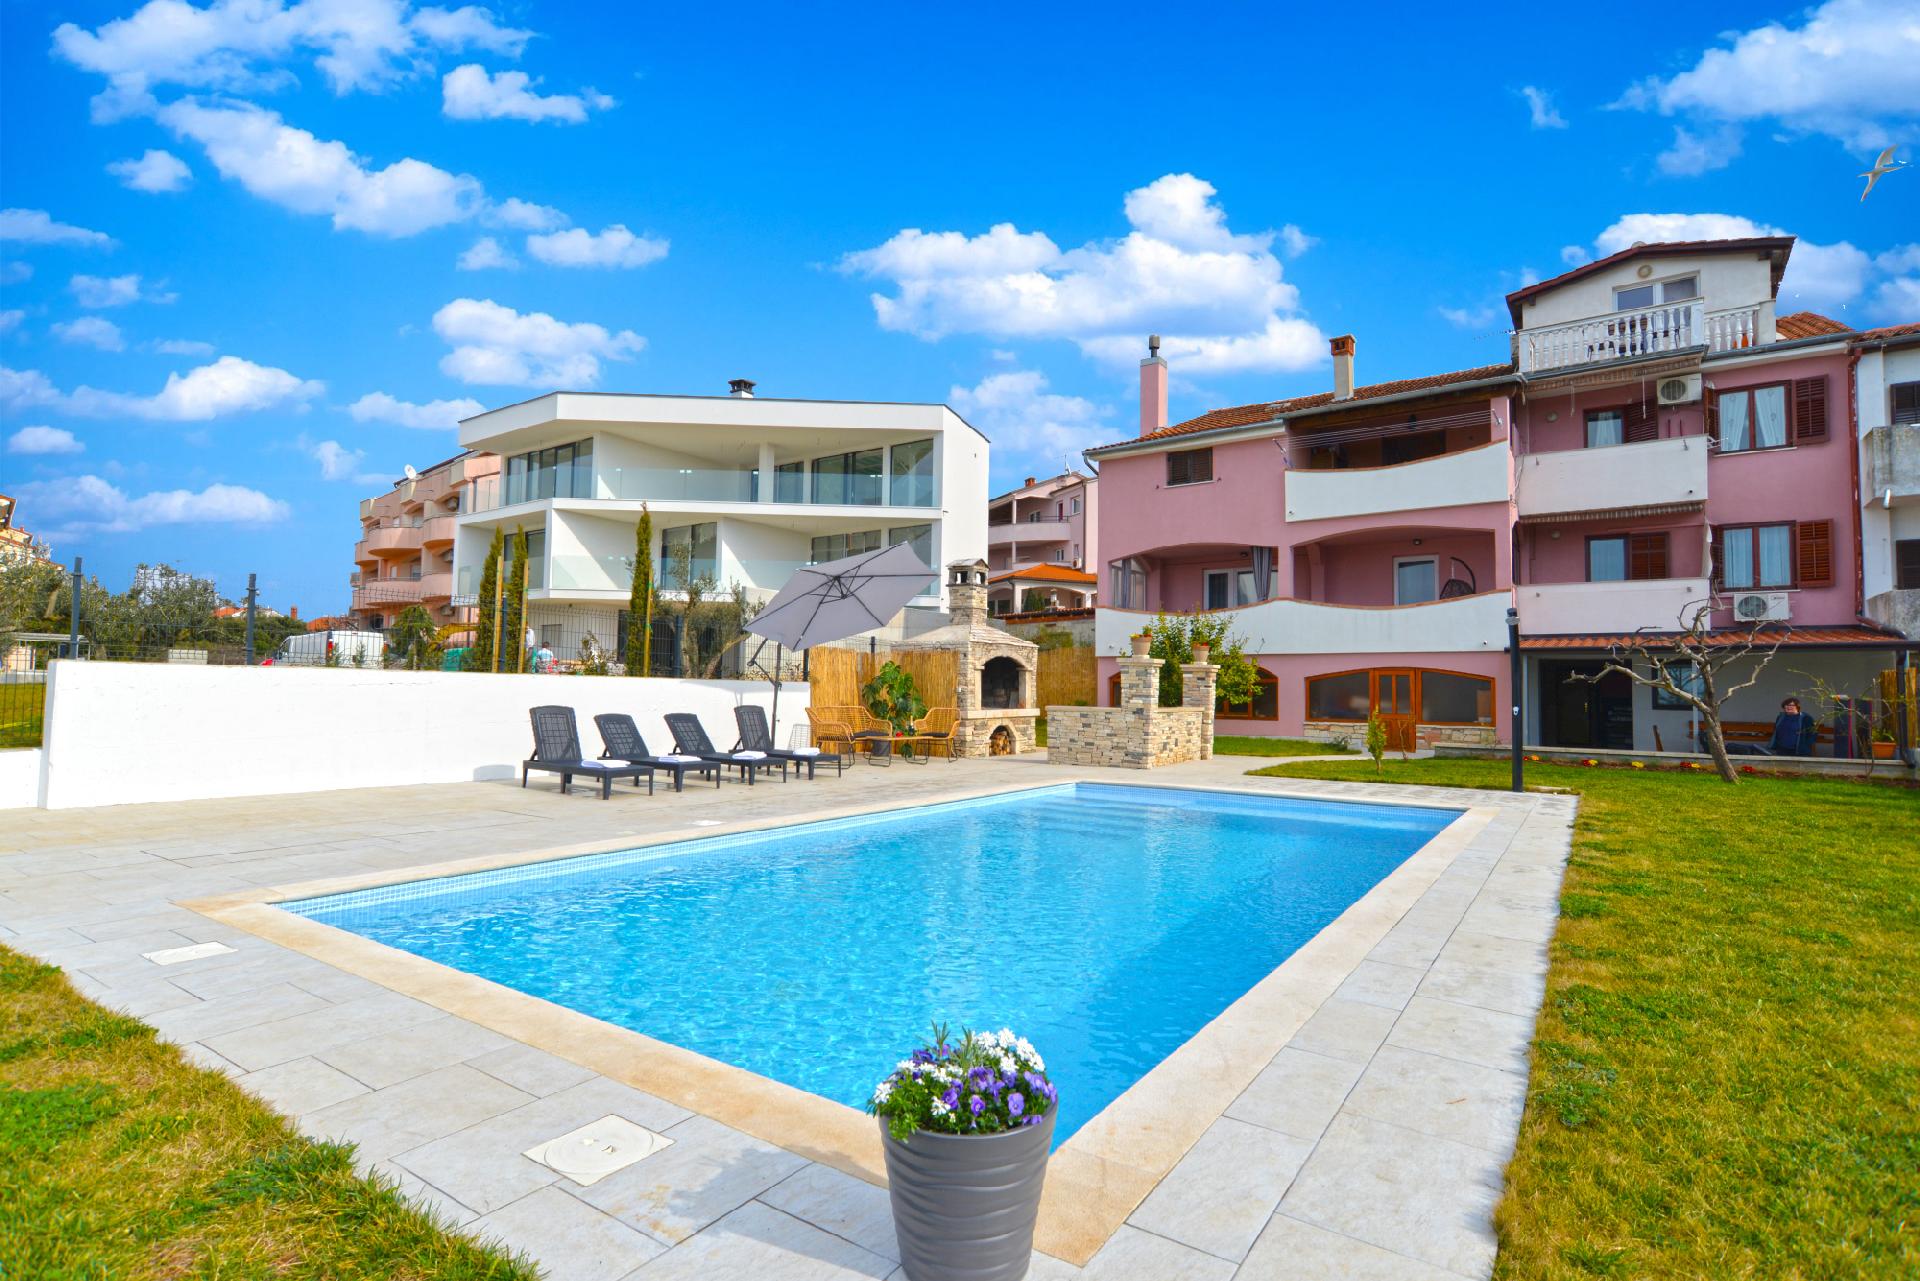 Ferienwohnung für 8 Personen ca. 95 m² i  in Istrien